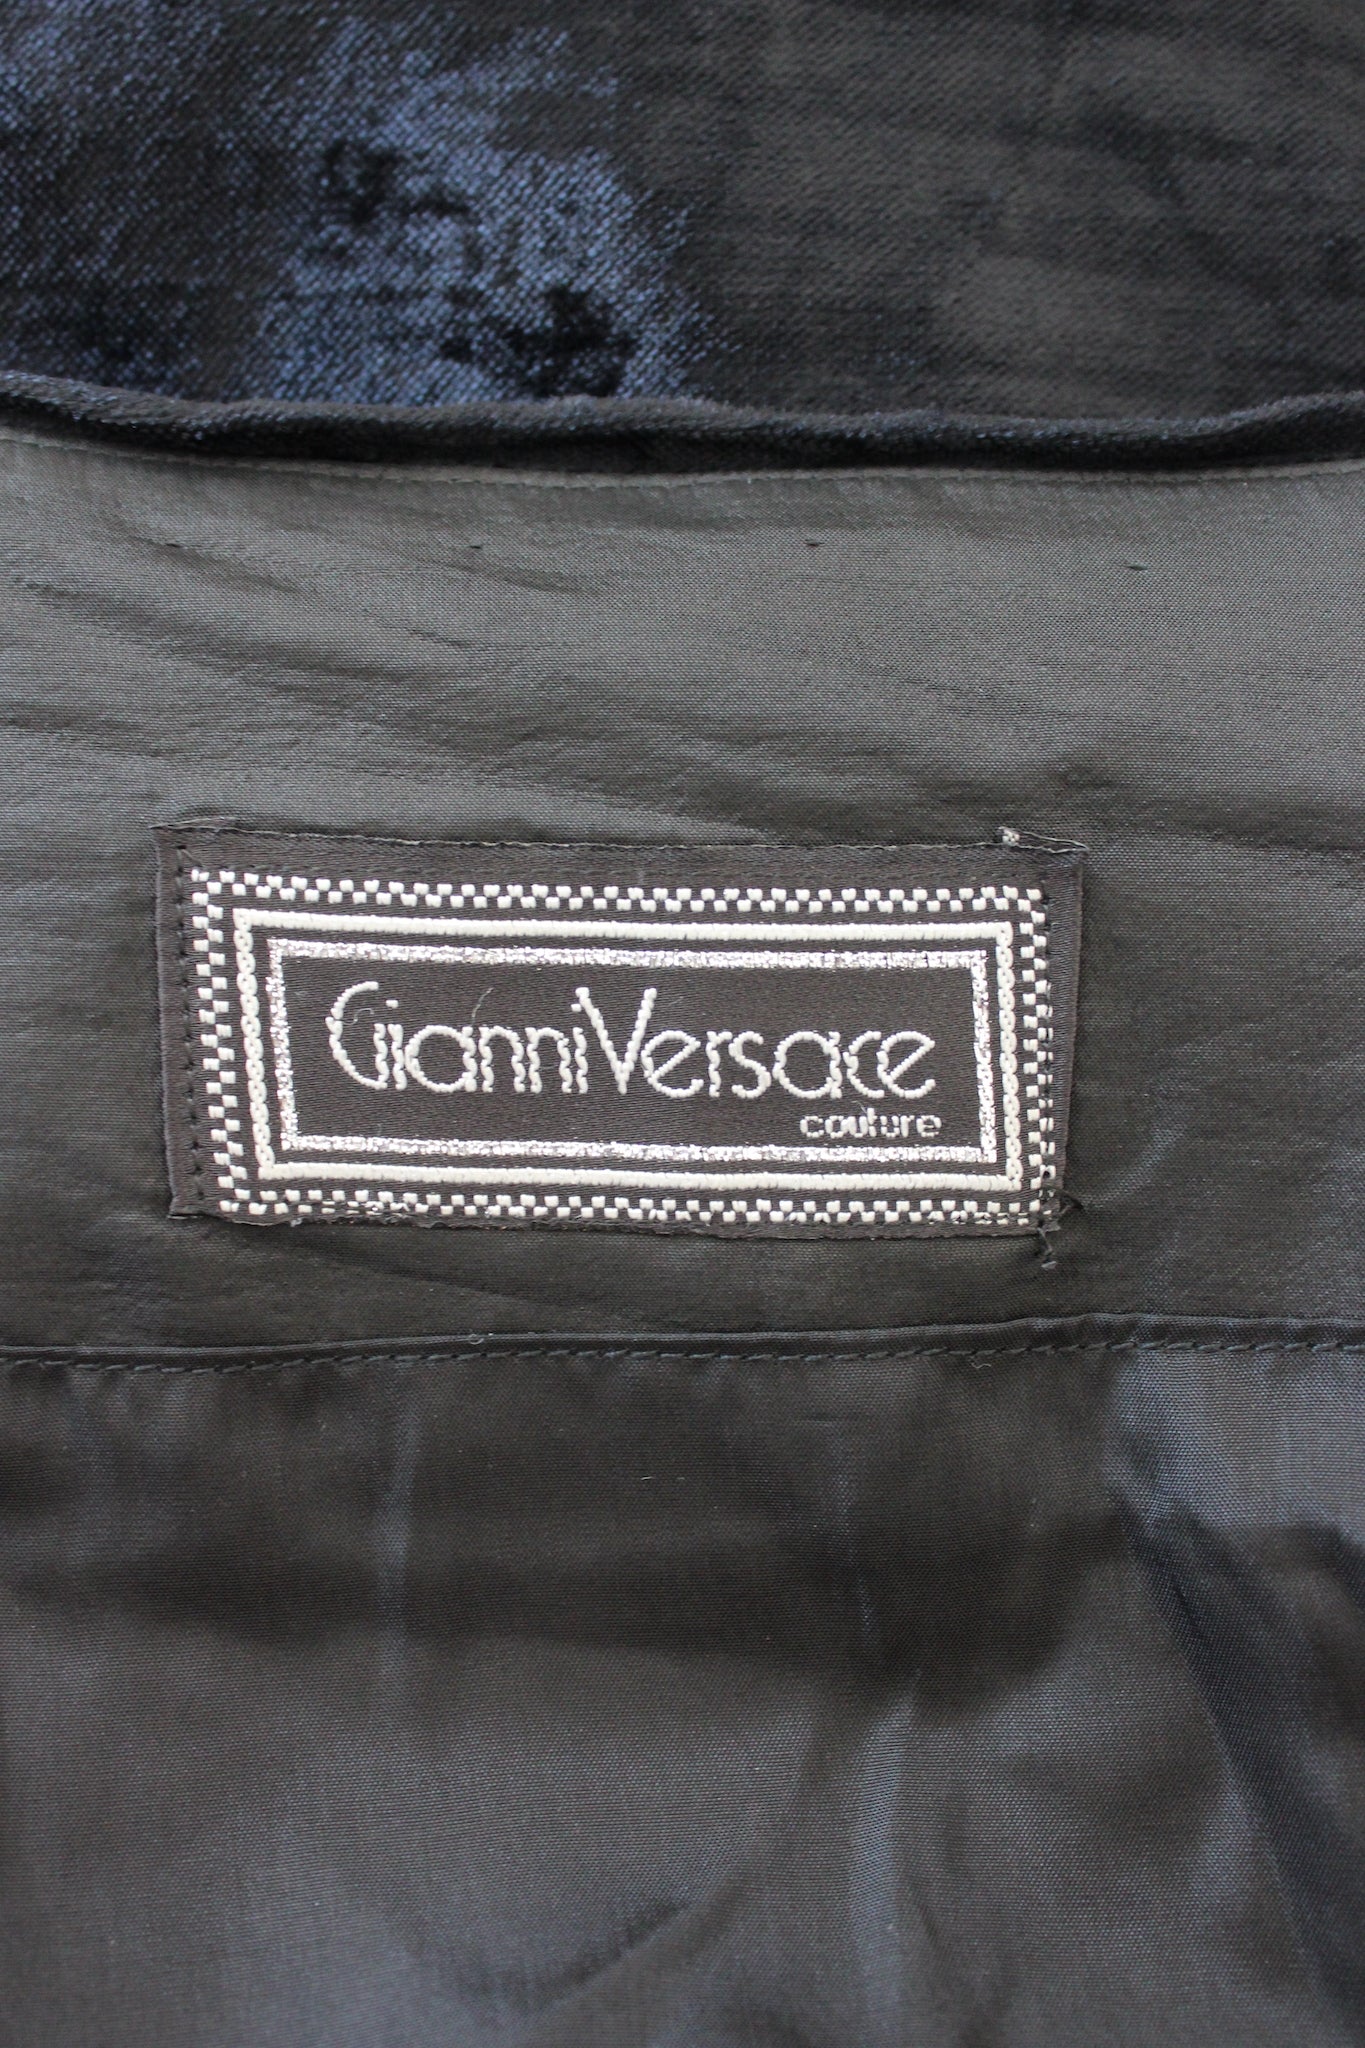 Gianni Versace Abito da Sera Vintage Nero